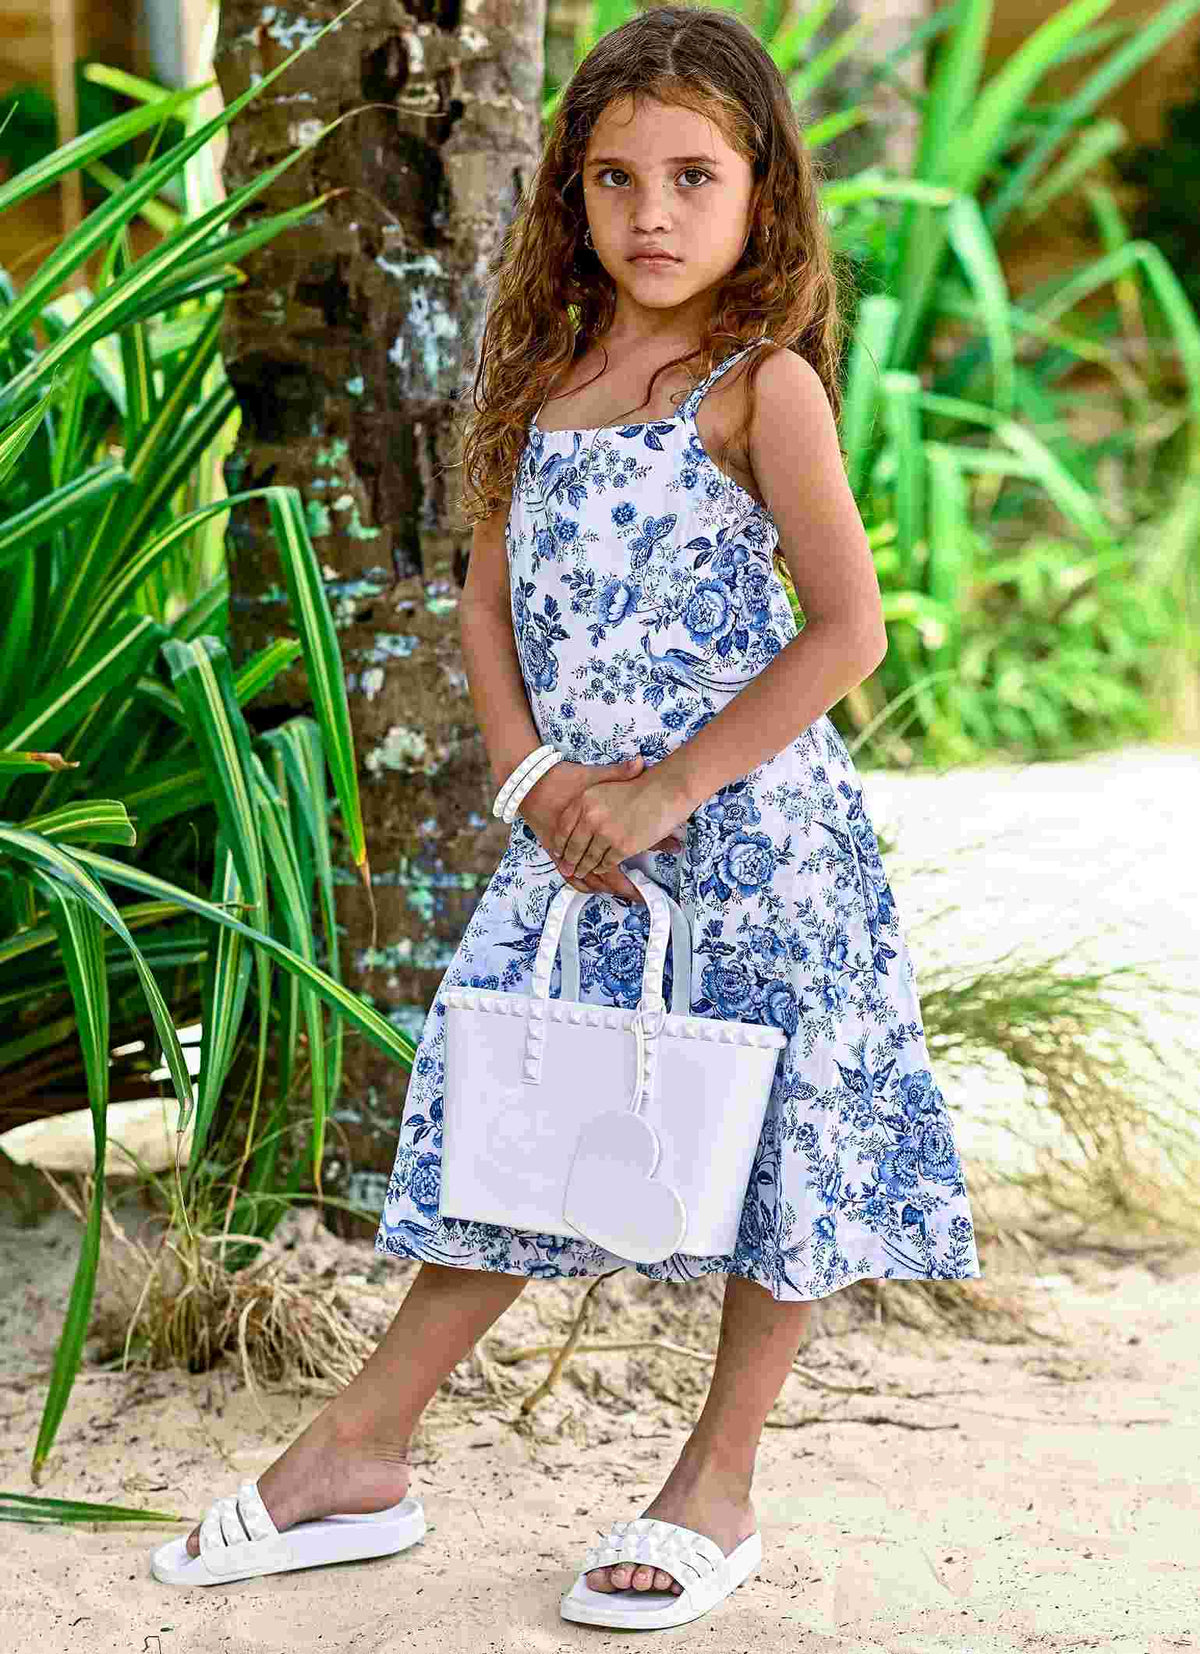 Franco white kid shoe, kids sandals for girls beach lovers from minicarmen sol.